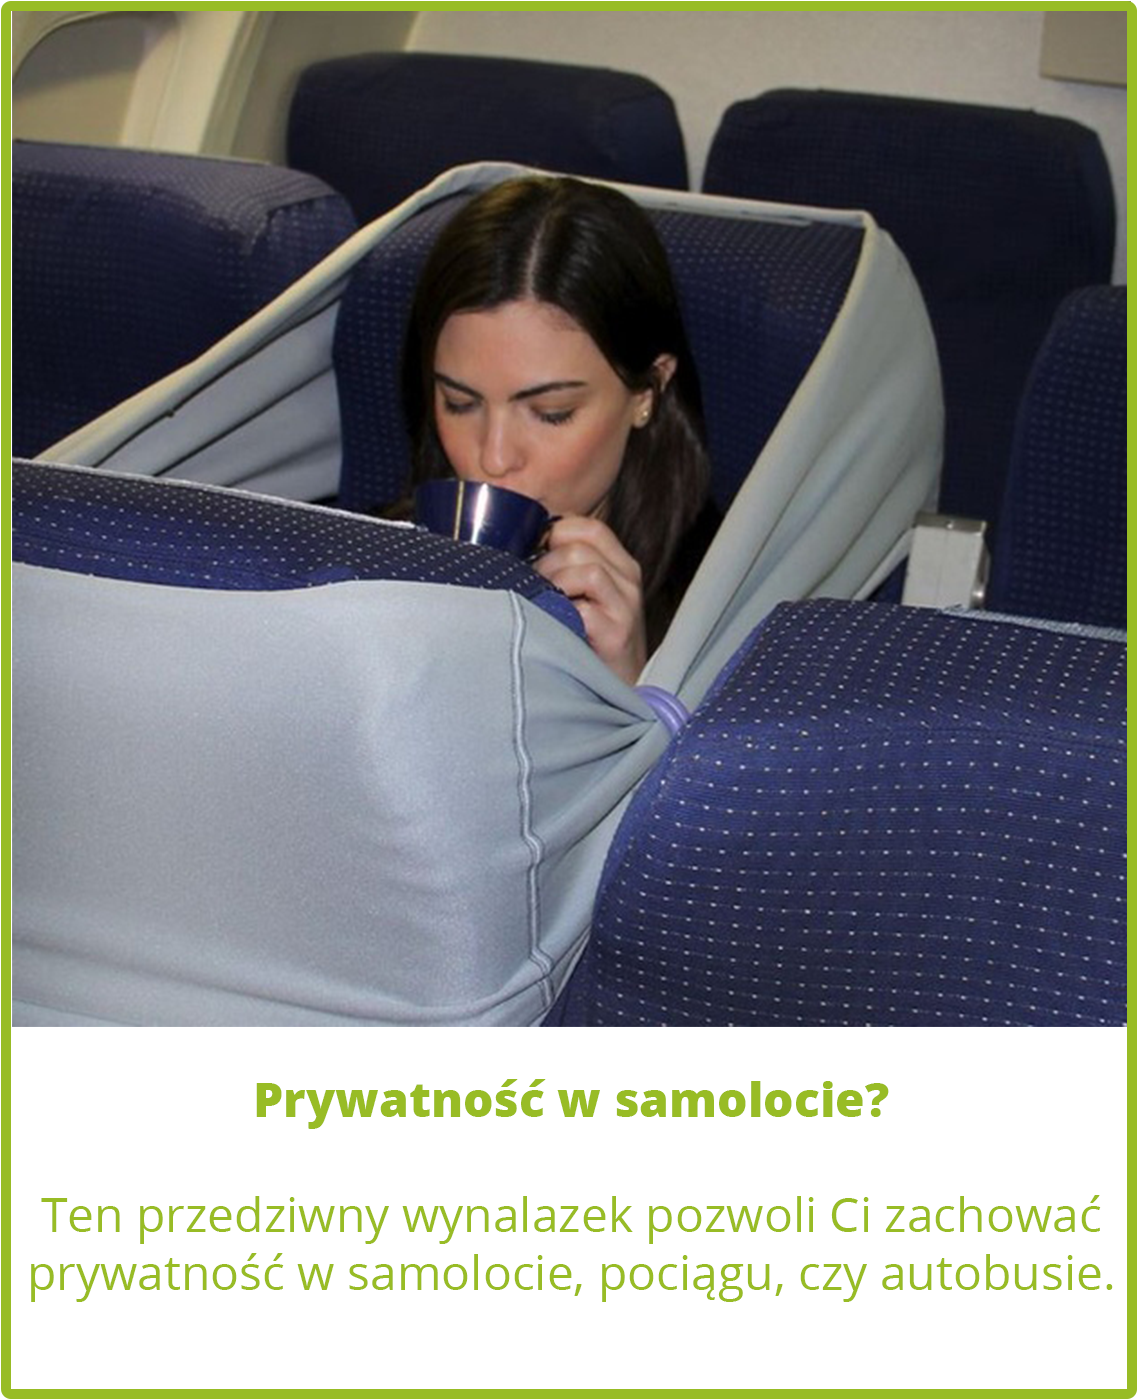 В час будет удобно. Приспособления для сна в самолете. Удобная подушка в самолет. Подушка для полета в самолете. Удобные вещи для перелёта.